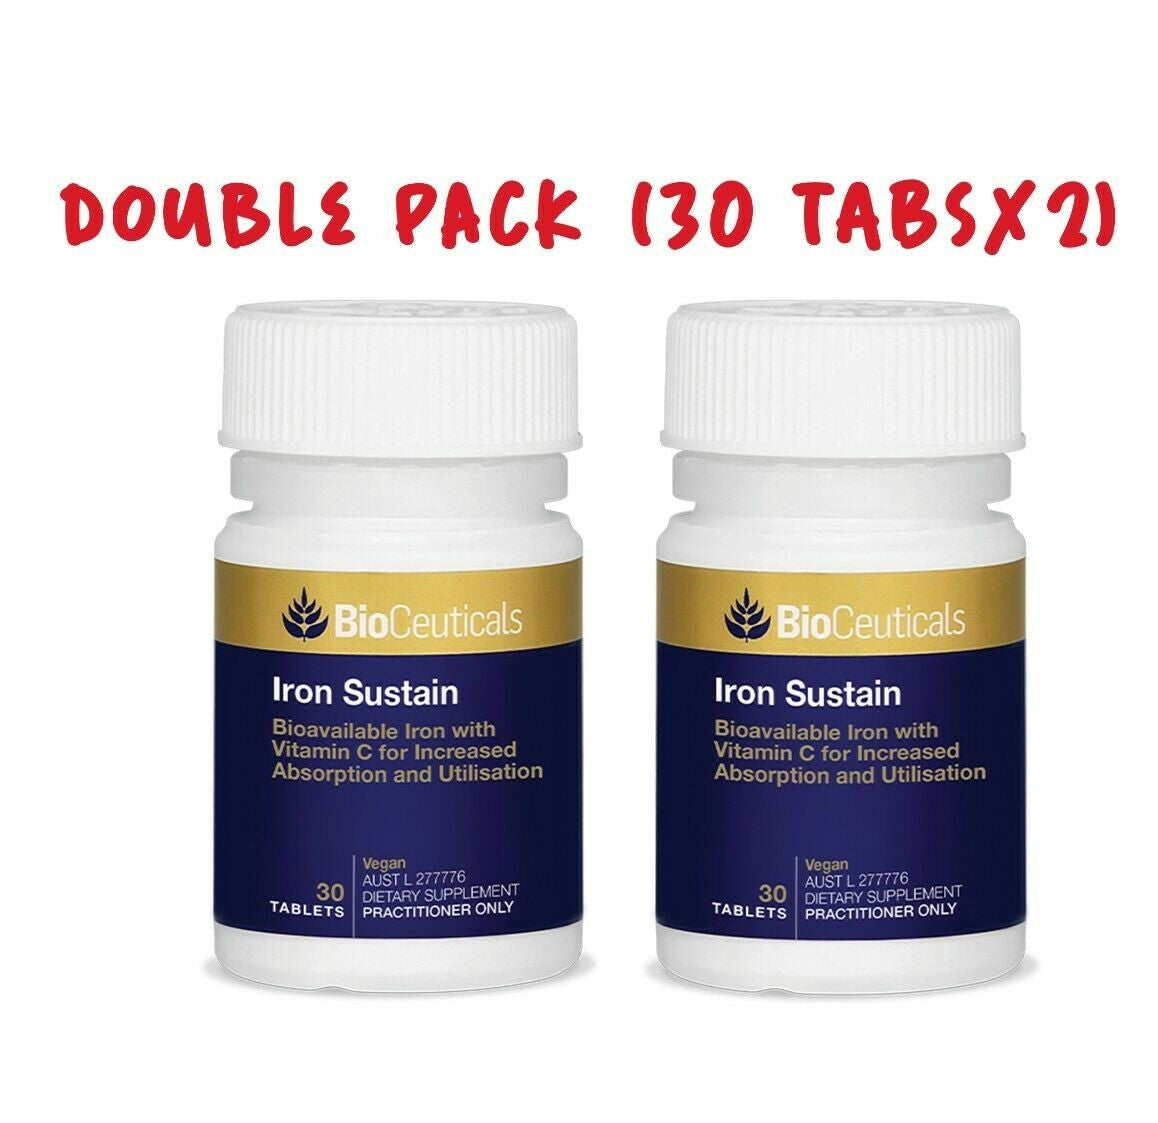 BioCeuticals Iron Sustain 30 tabs x2 BOTTLES